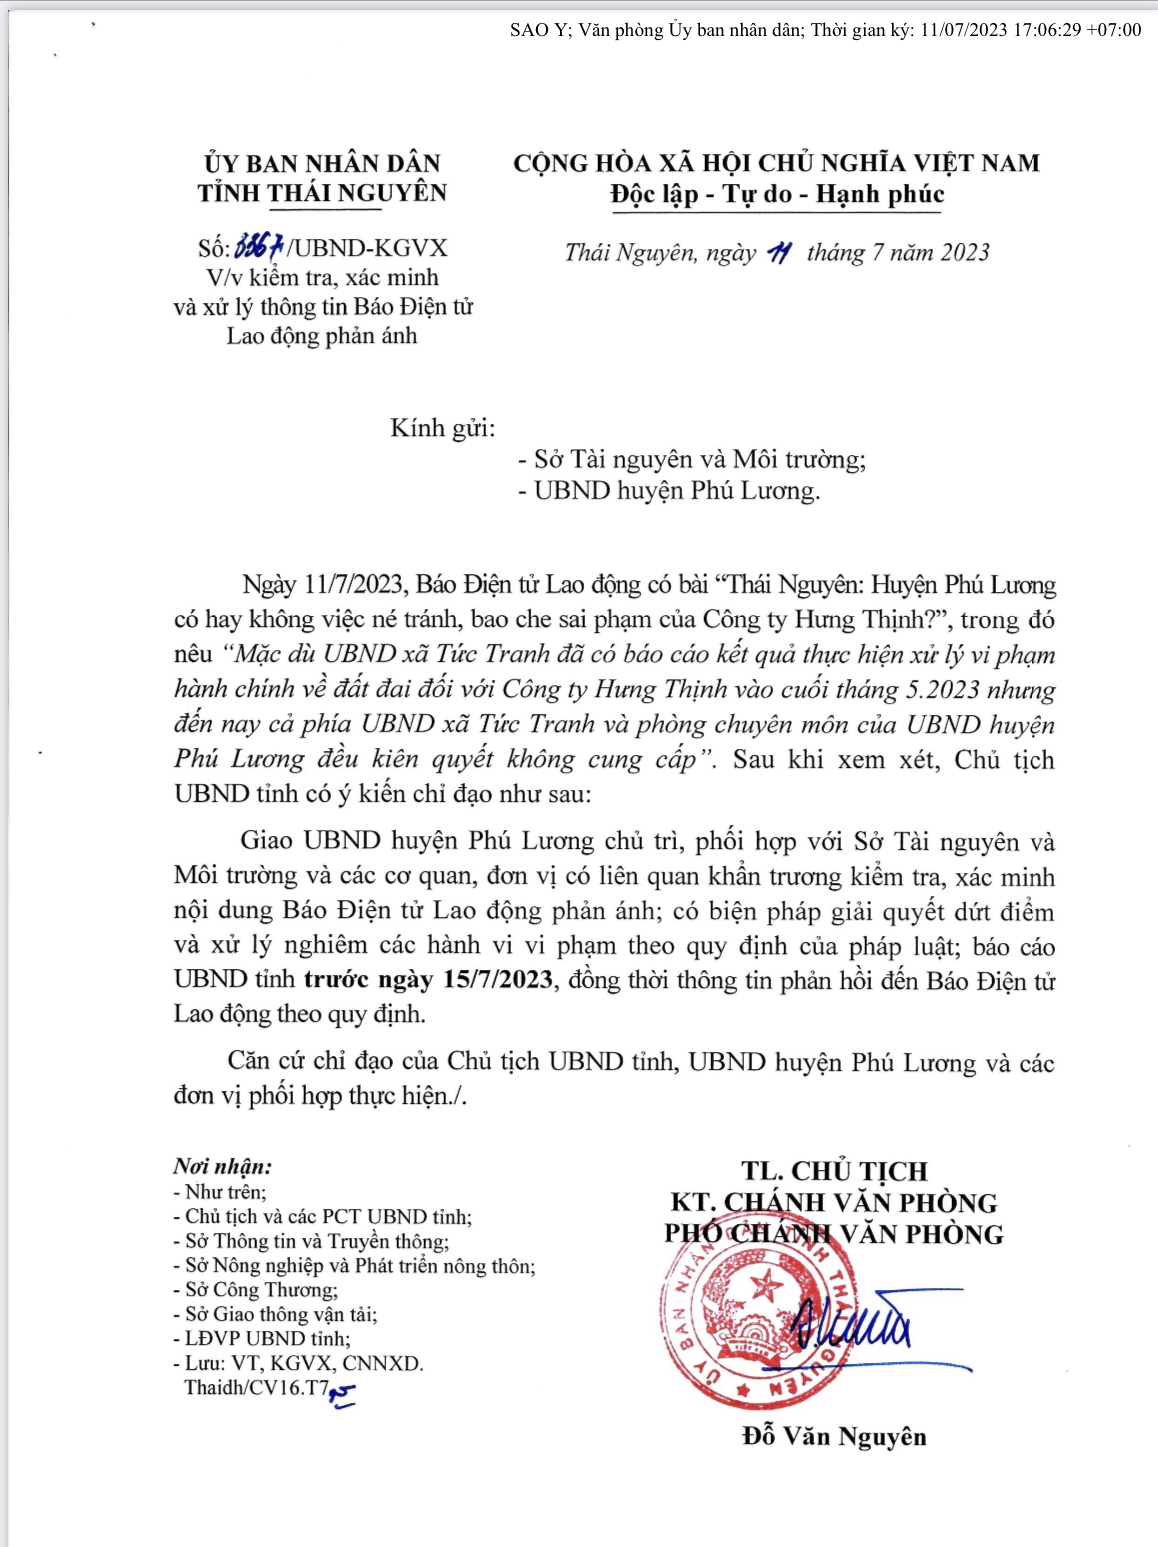 Chủ tịch UBND tỉnh Thái Nguyên yêu cầu các cơ quan liên quan kiểm tra, giải quyết dứt điểm và xử lý nghiêm các hành vi vi phạm.